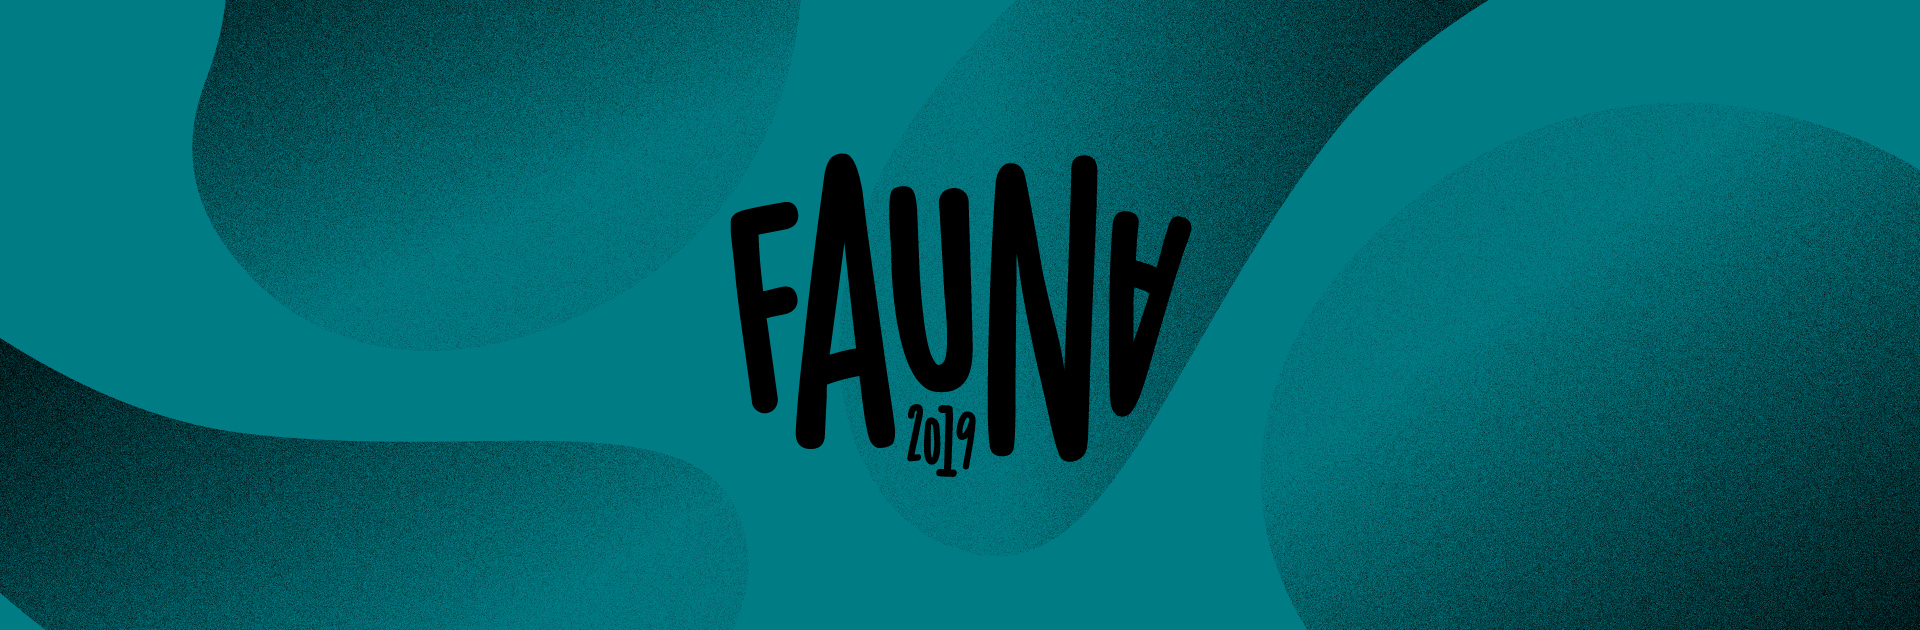 Felicitaciones a estudiantes y graduada/os seleccionada/os para el FAUNA 2019